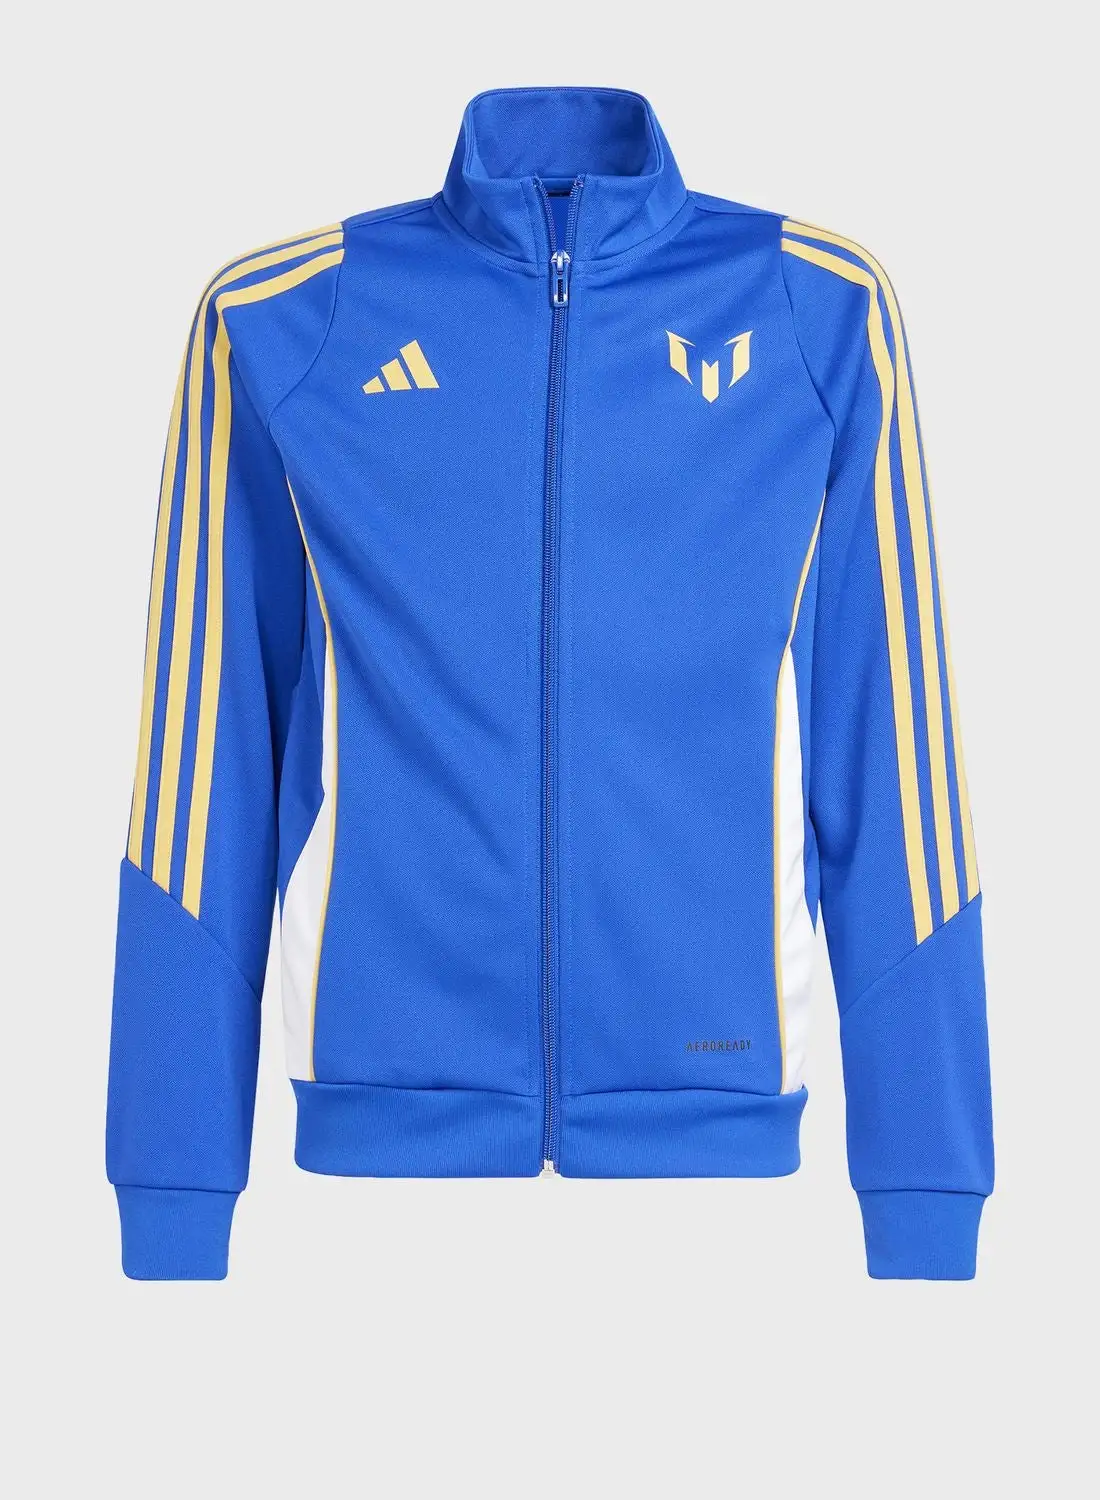 Adidas Youth Messi Jacket